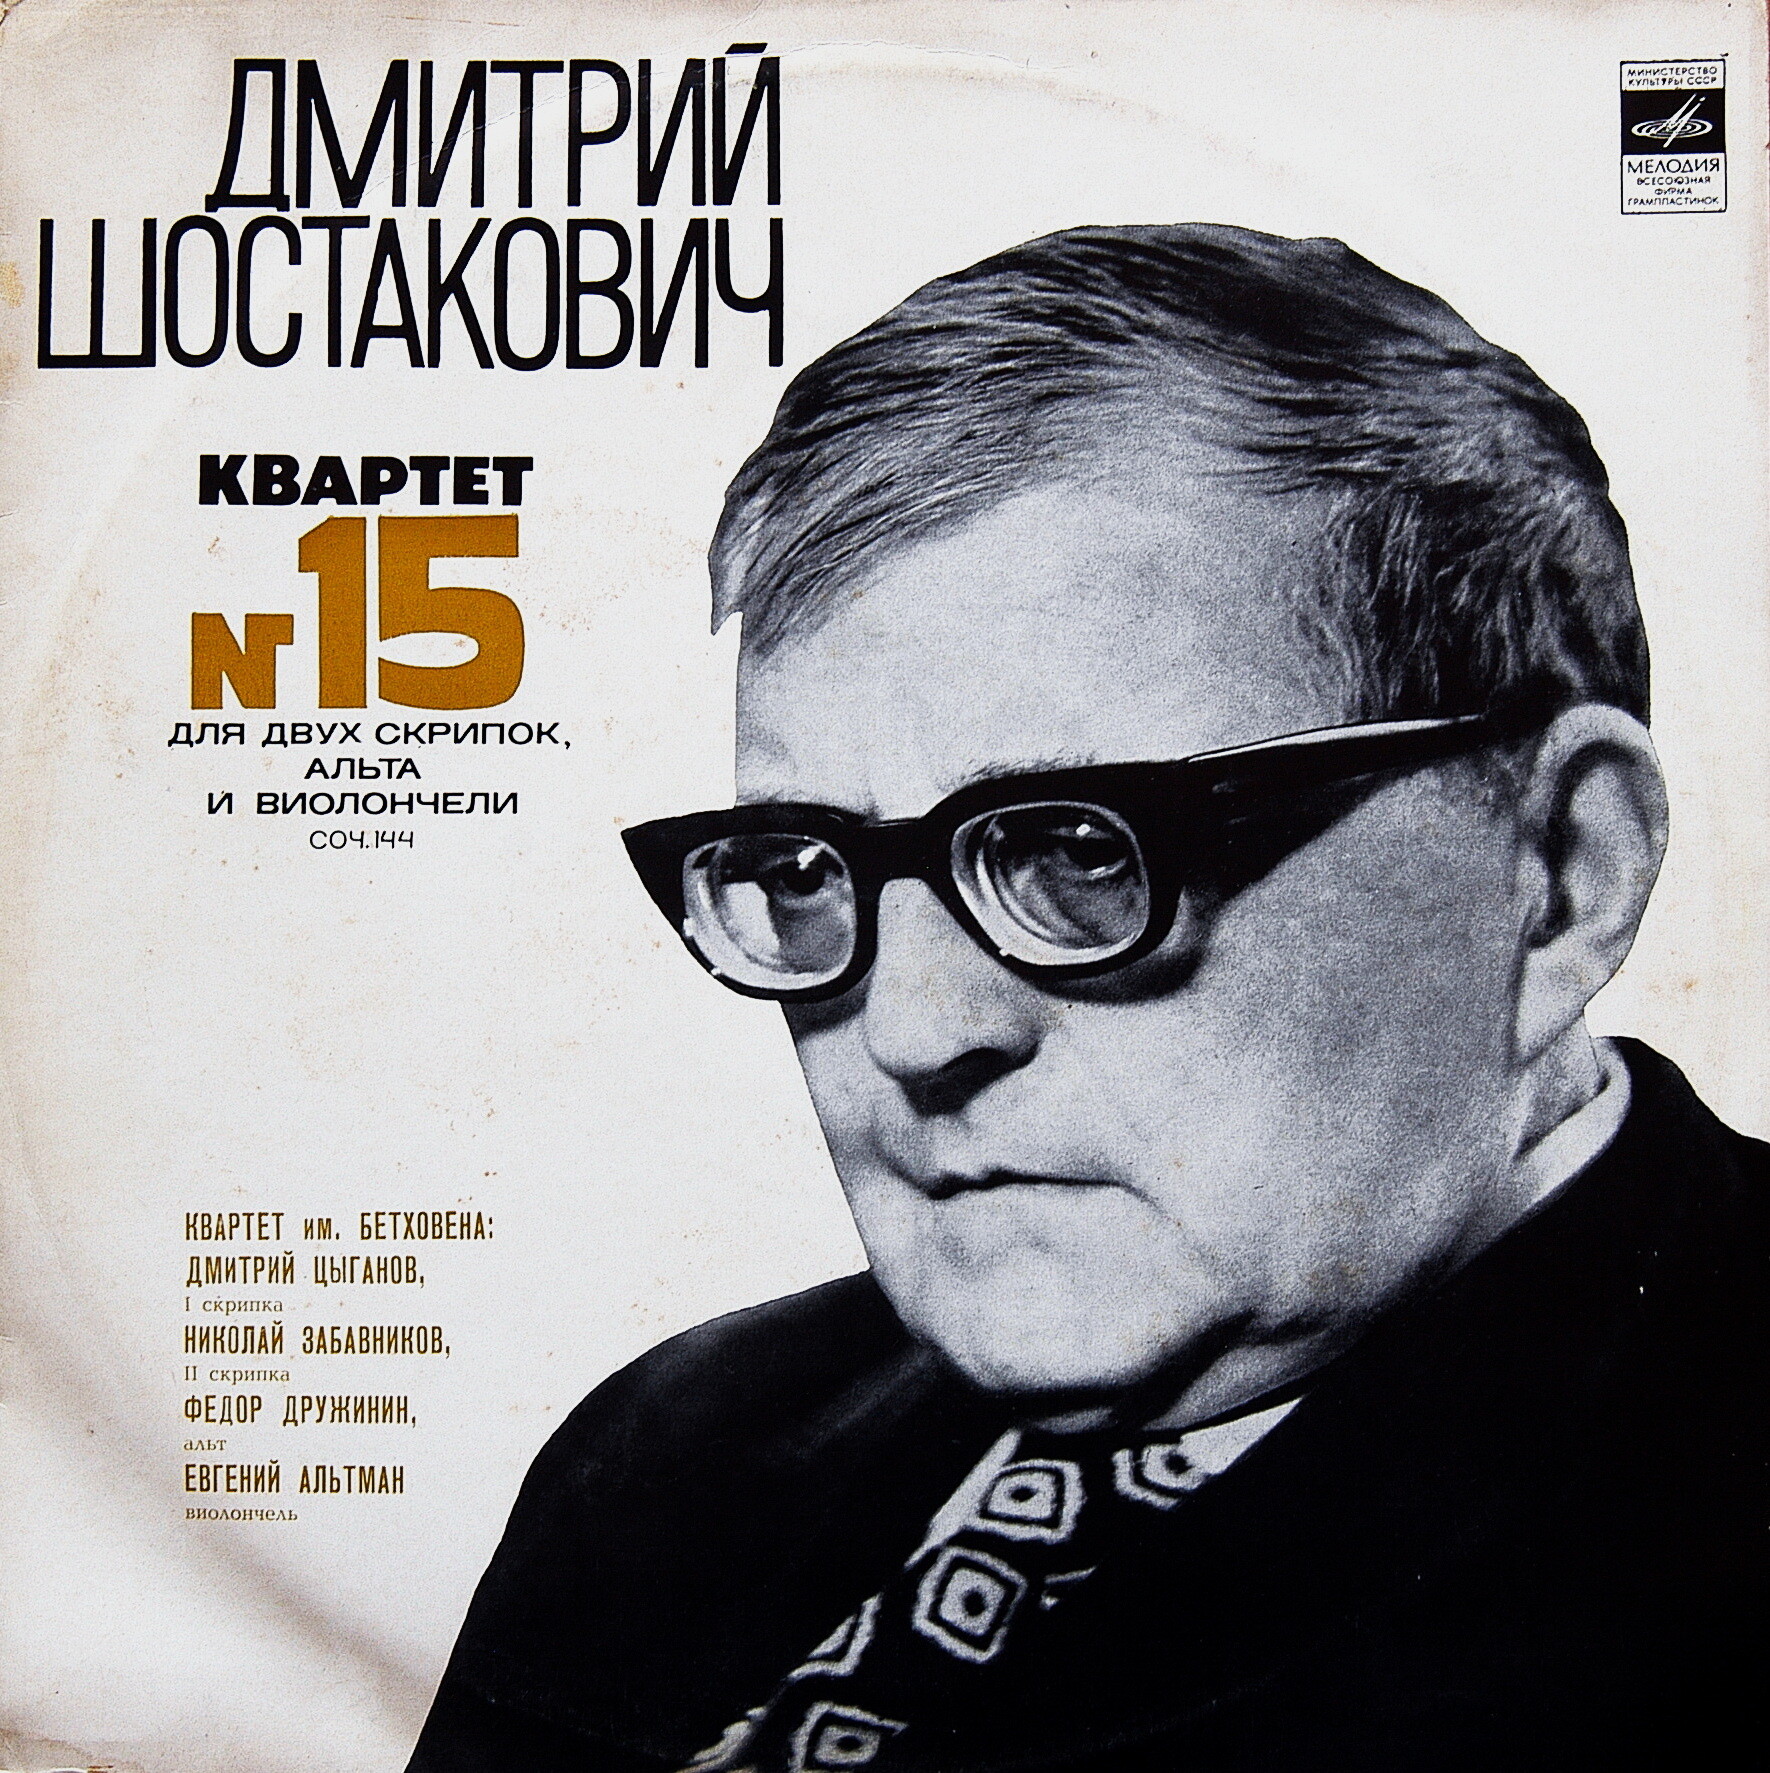 Д. Шостакович - Квартет № 15 - Квартет им. Бетховена